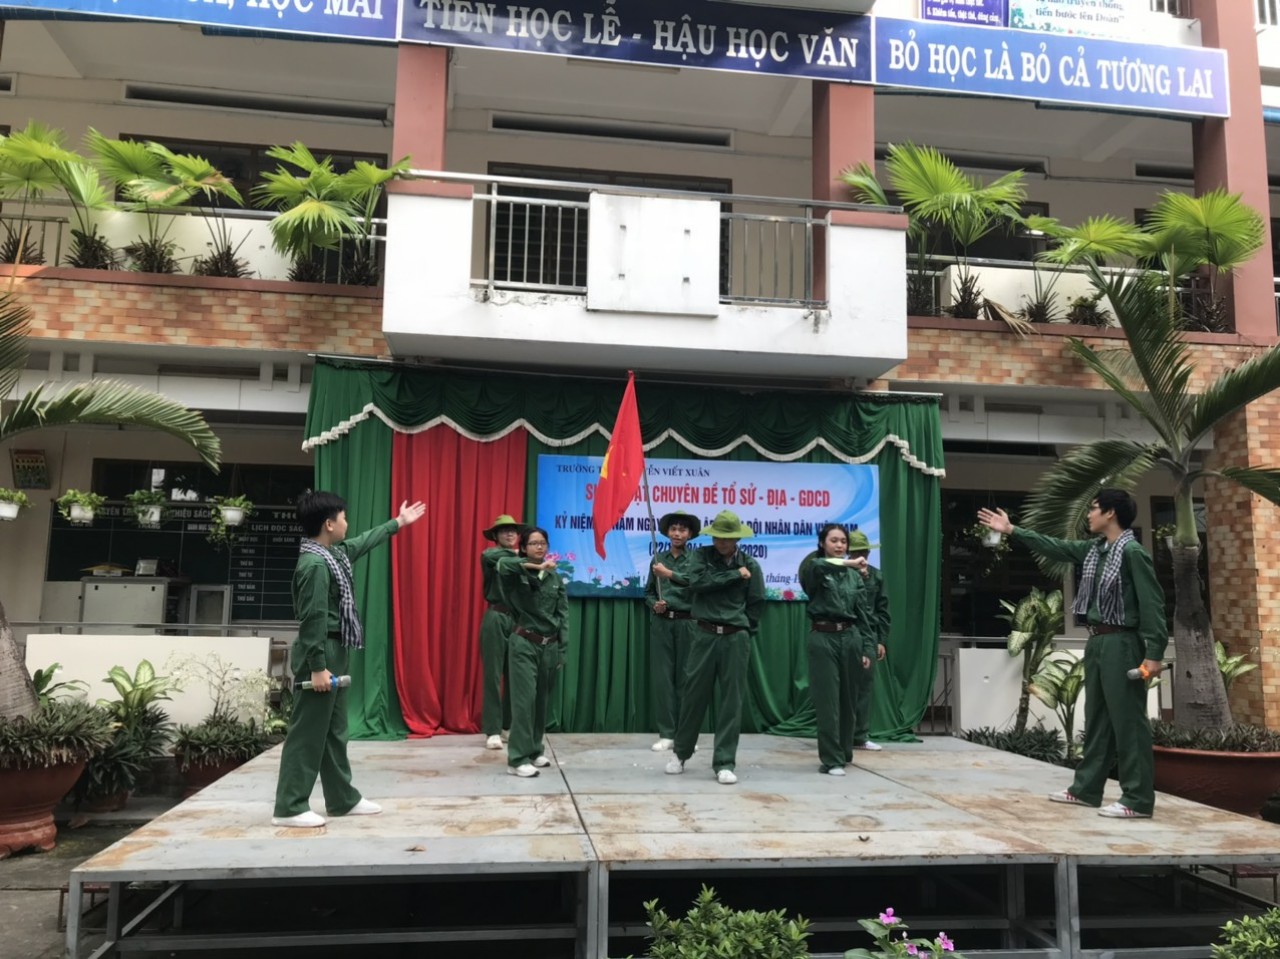 Giáo dục truyền thống yêu nước, tự hào về những trang sử hào hùng của Quân đội Nhân dân Việt Nam